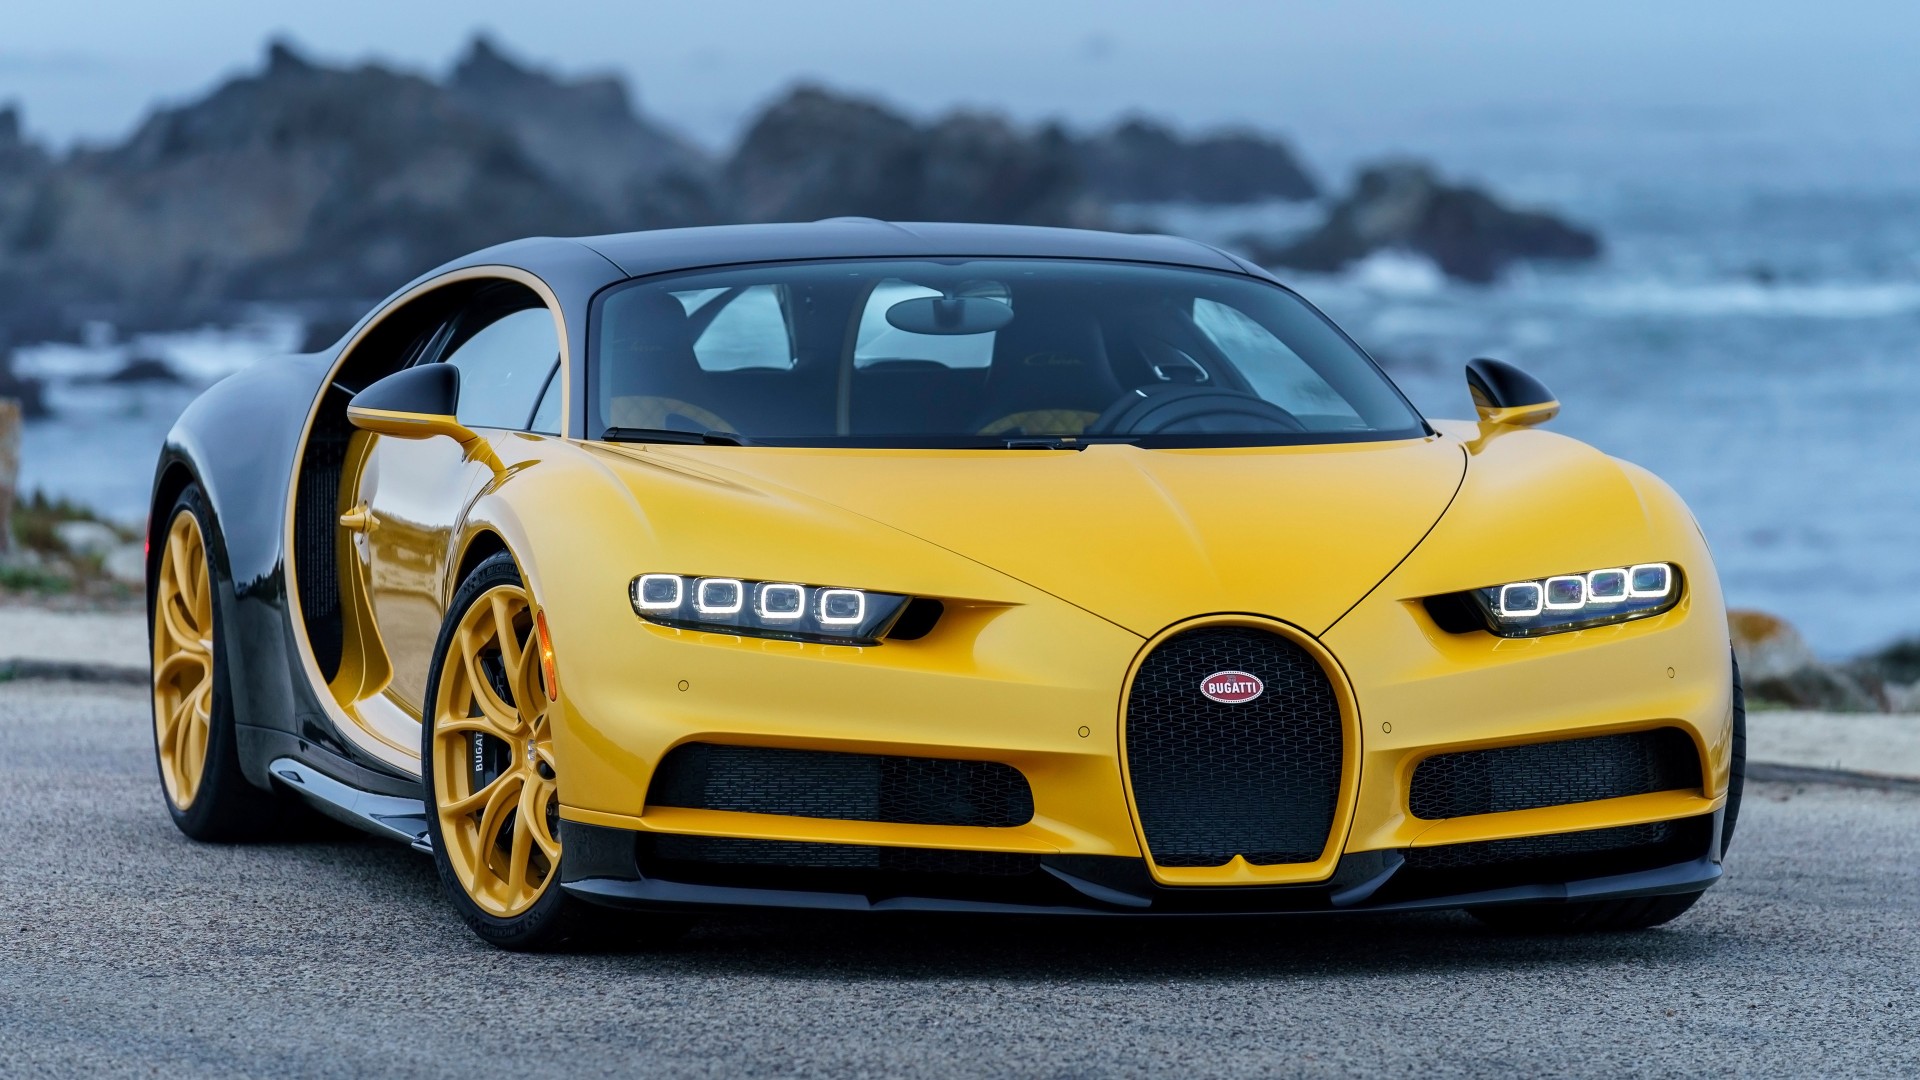 2018 Bugatti Chiron Yellow and Black 4K 2 Wallpaper | HD ...